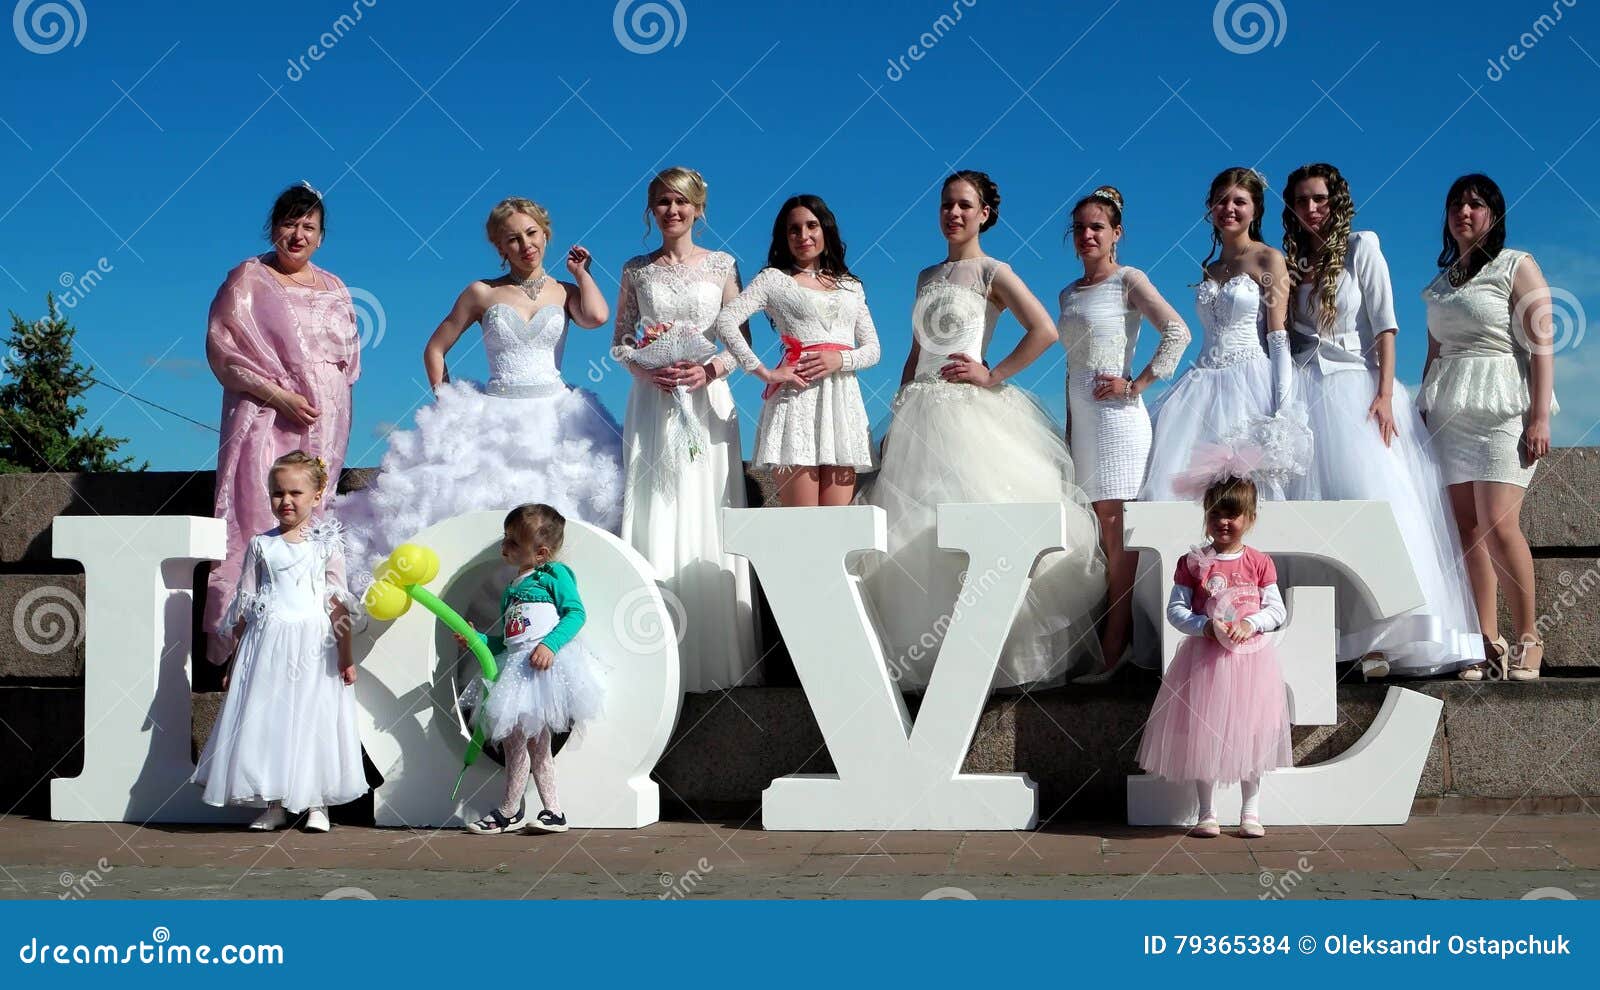 Kherson Brides